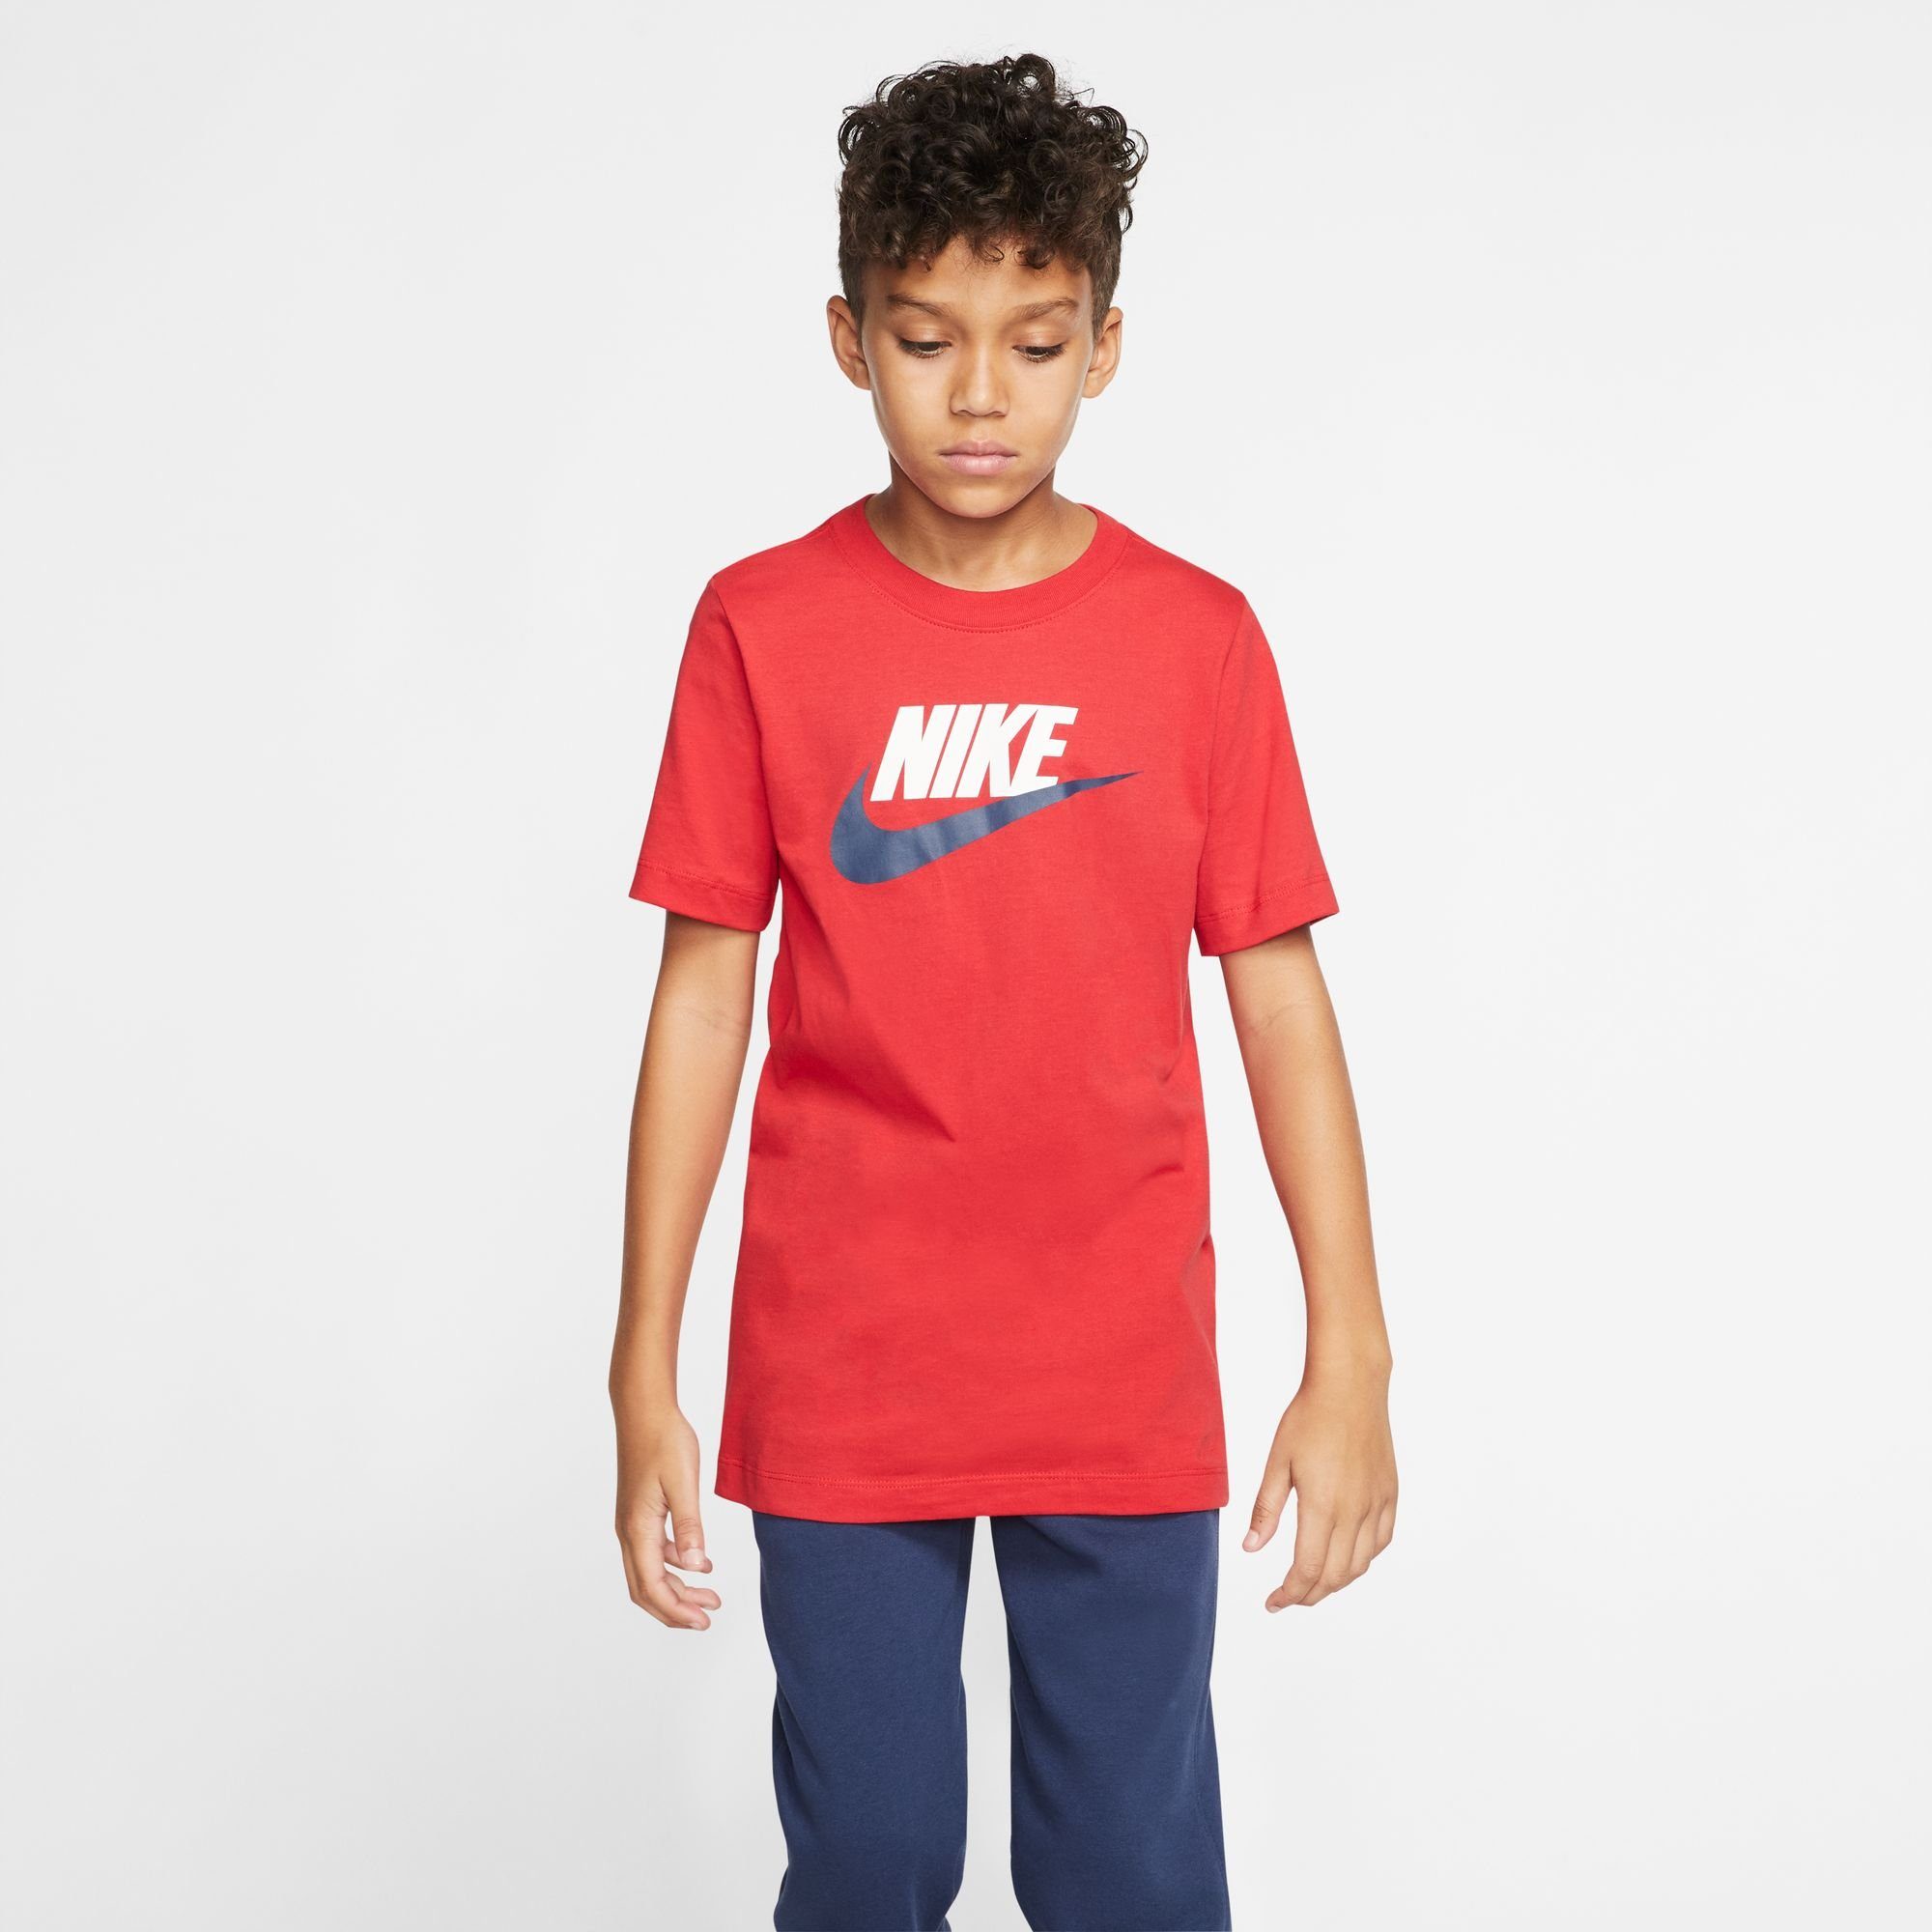 Preisangebot Nike Sportswear T-Shirt BIG KIDS' T-SHIRT rot COTTON